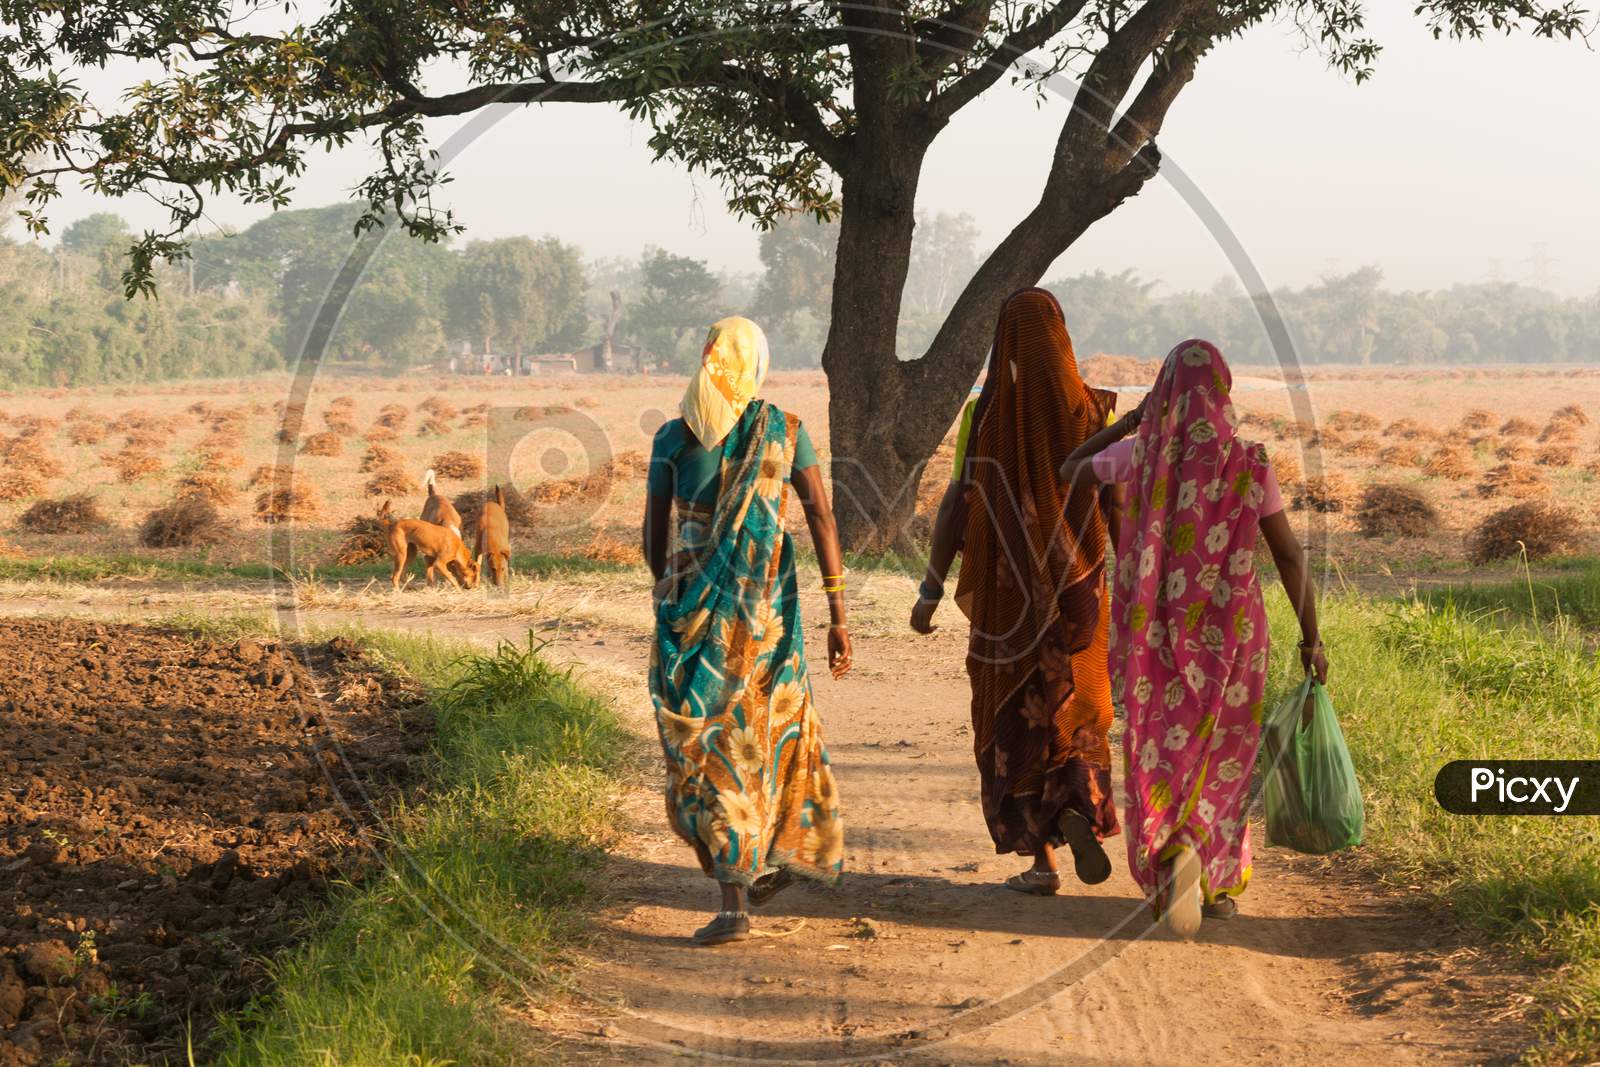 Indian Farmer Having Walk In The Field.